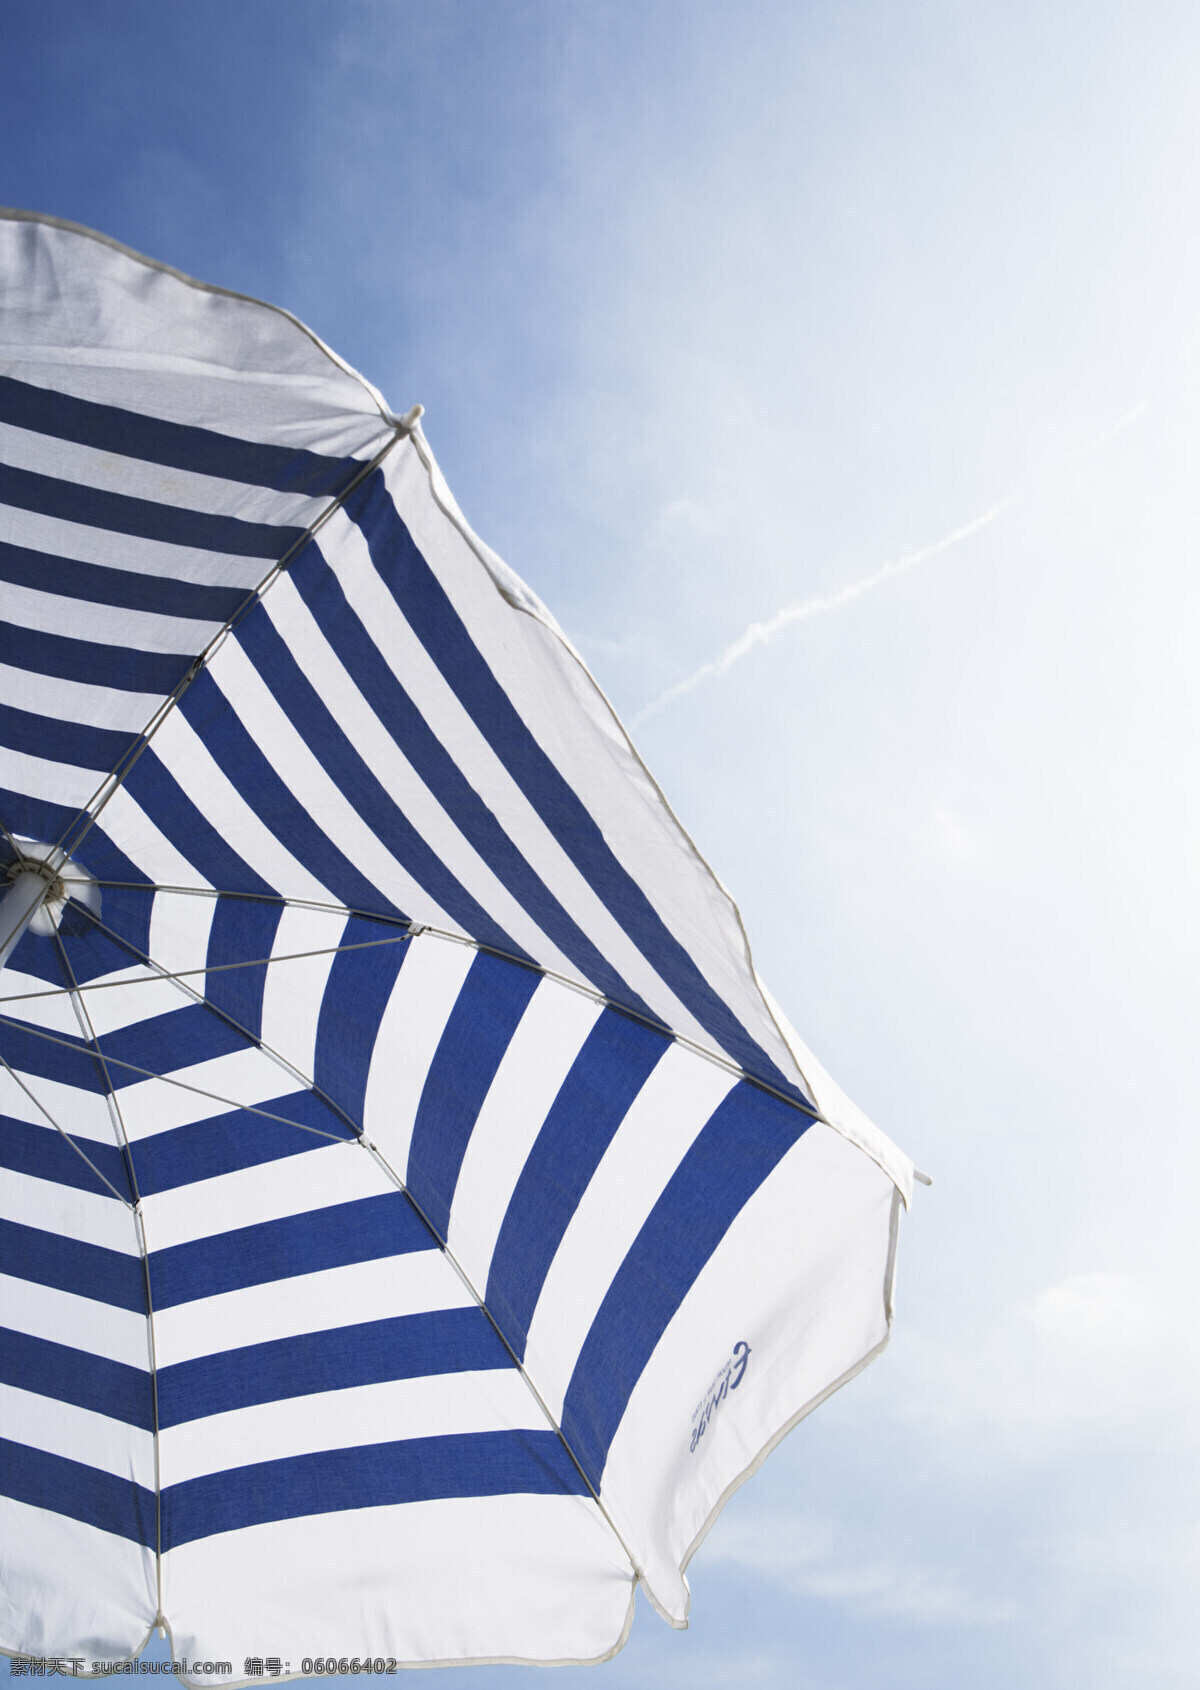 洋伞免费下载 洋伞海军风 风景 生活 旅游餐饮